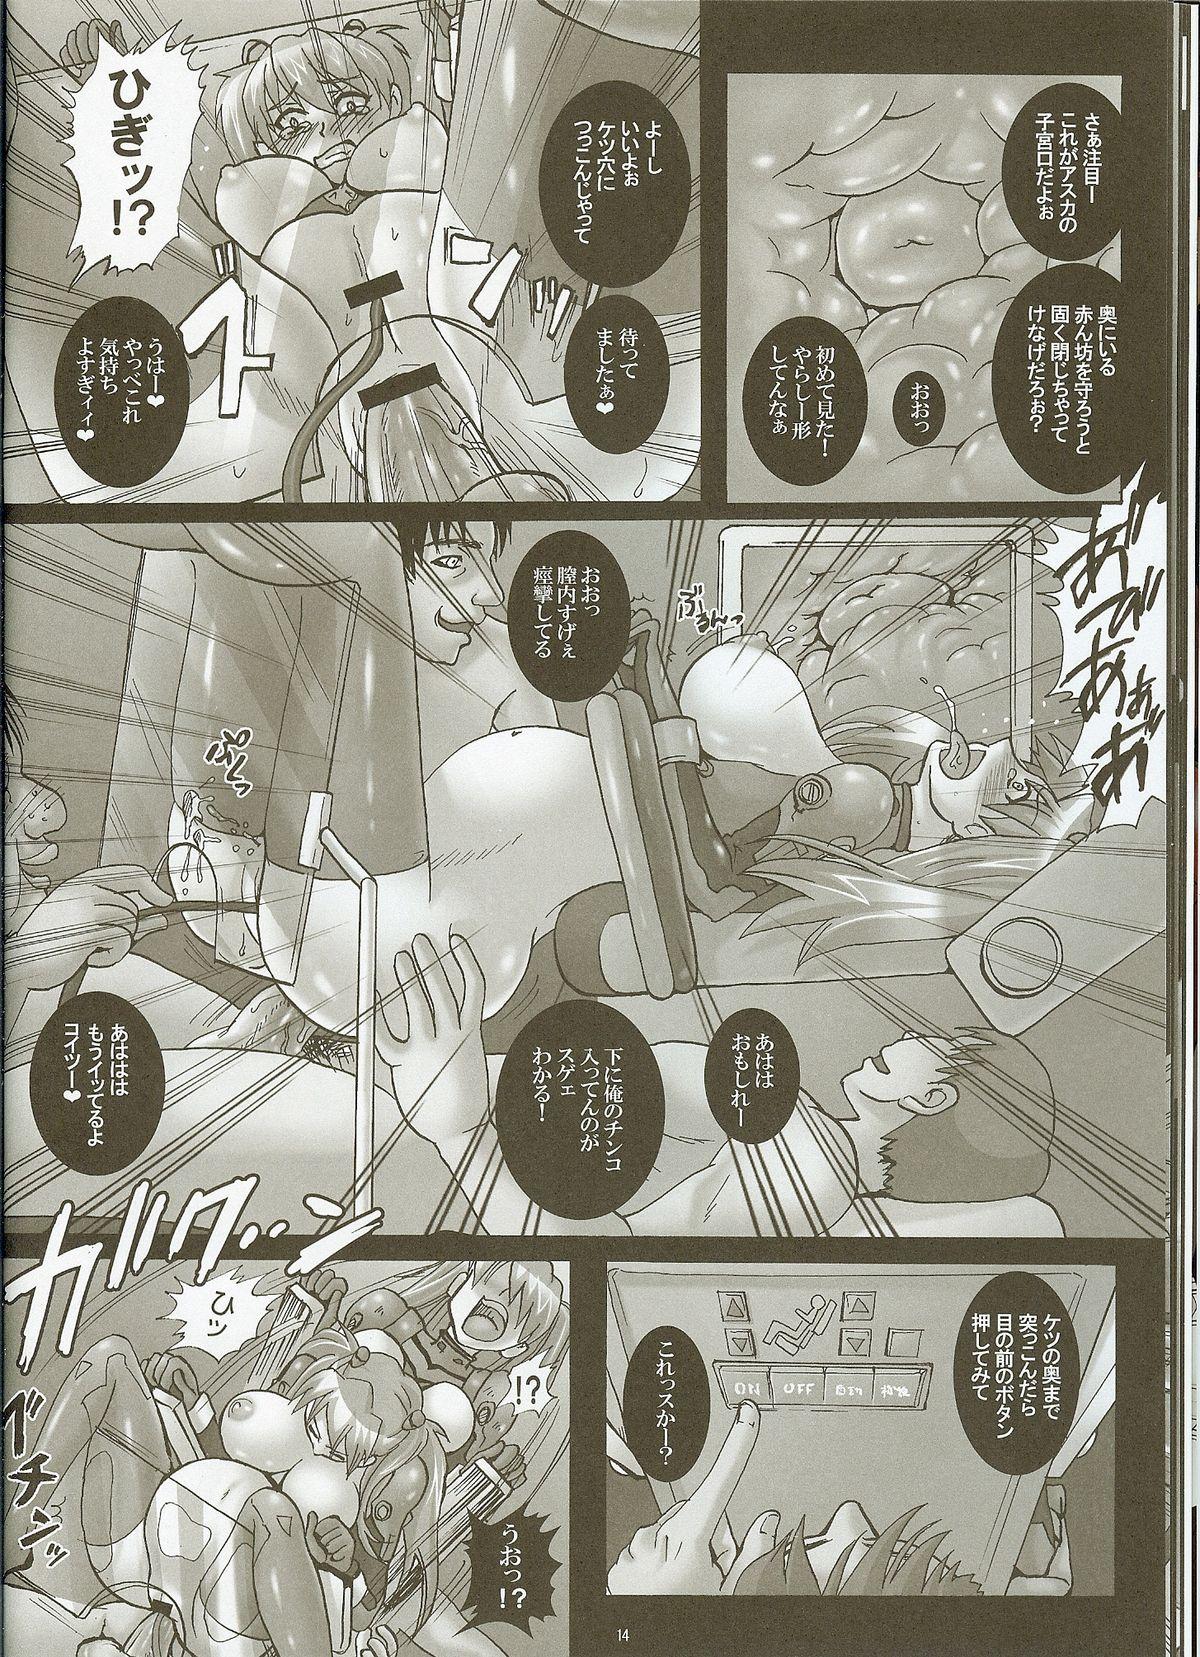 Teens Shinryou dai no Botai Omocha ～ Asuka, Ninshin 6 Kagetsu ～ - Neon genesis evangelion Smoking - Page 12